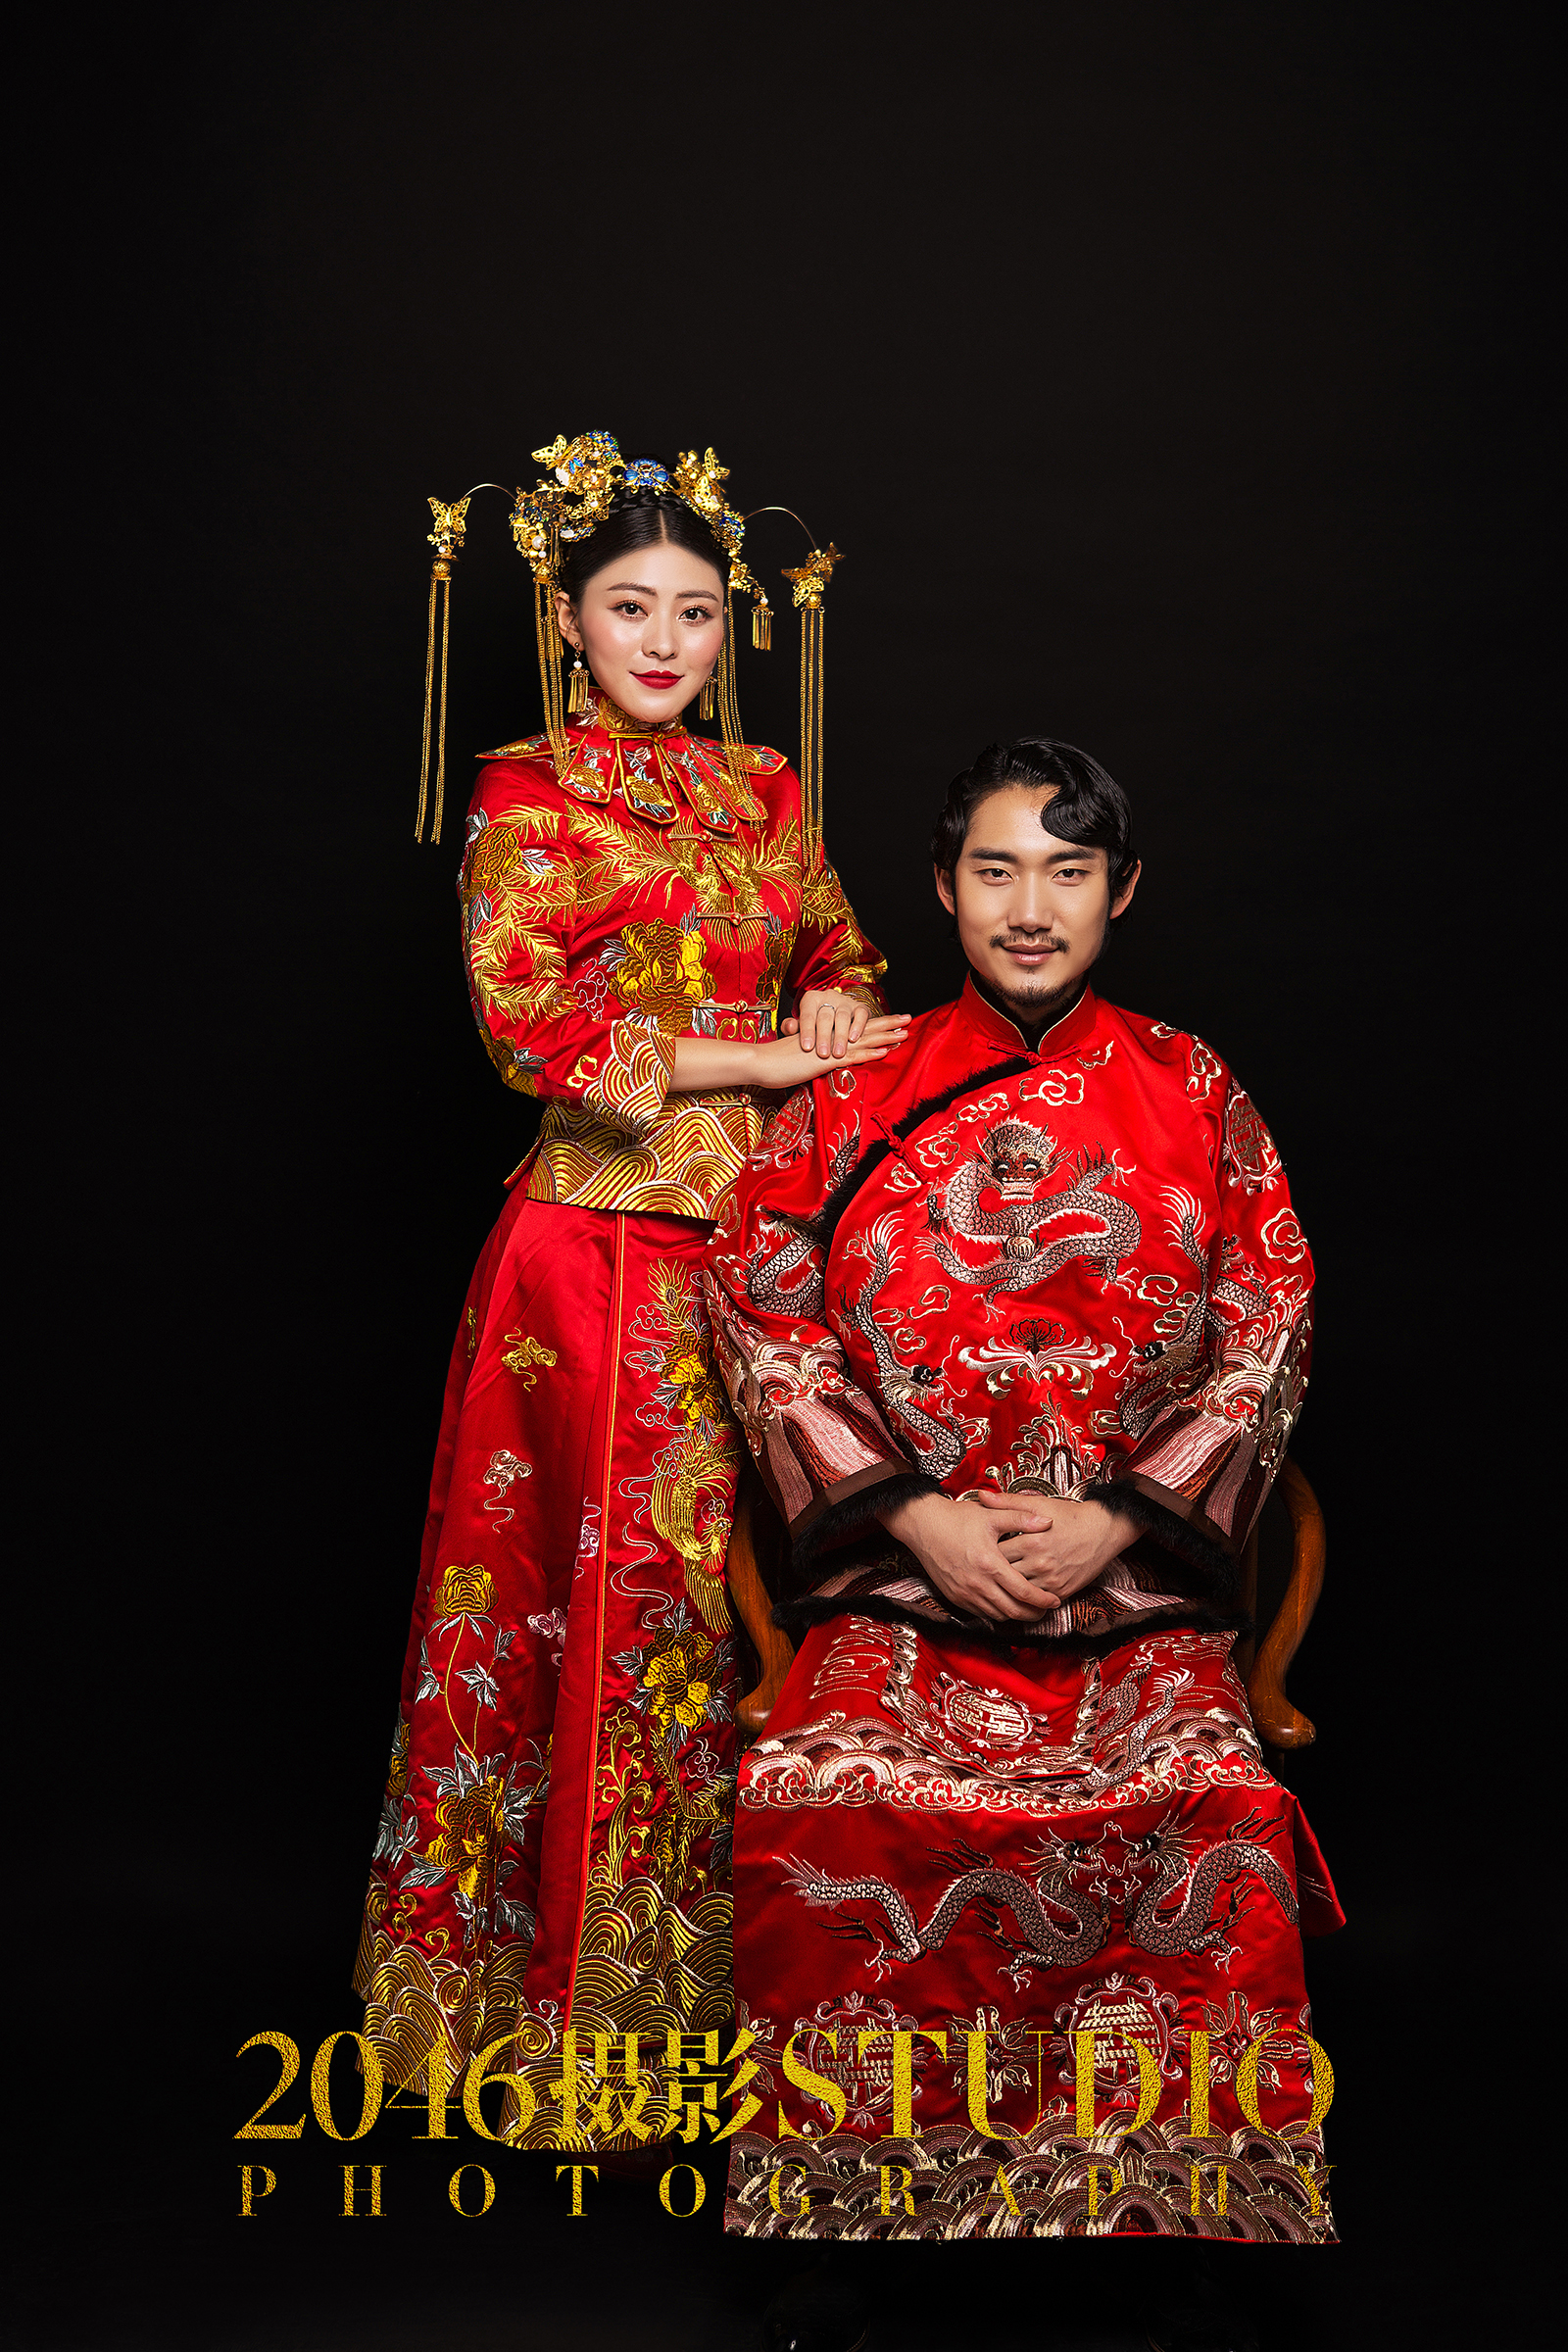 也可以尝试这样的,改良式的中式嫁衣,让新娘的好身材一览无遗,大红